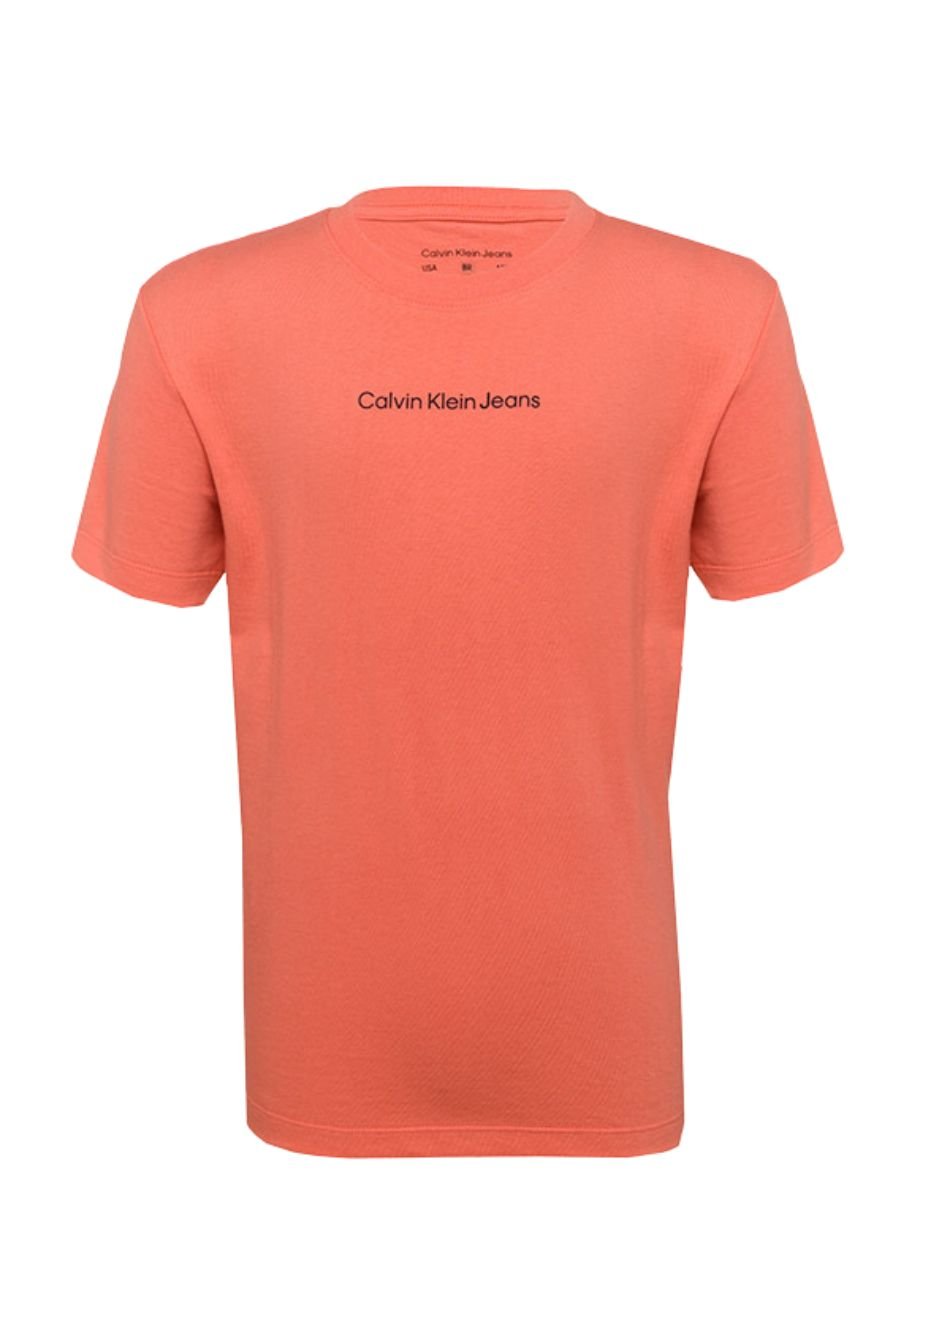 Camiseta Calvin Klein Lisa Rosa - Faz a Boa!